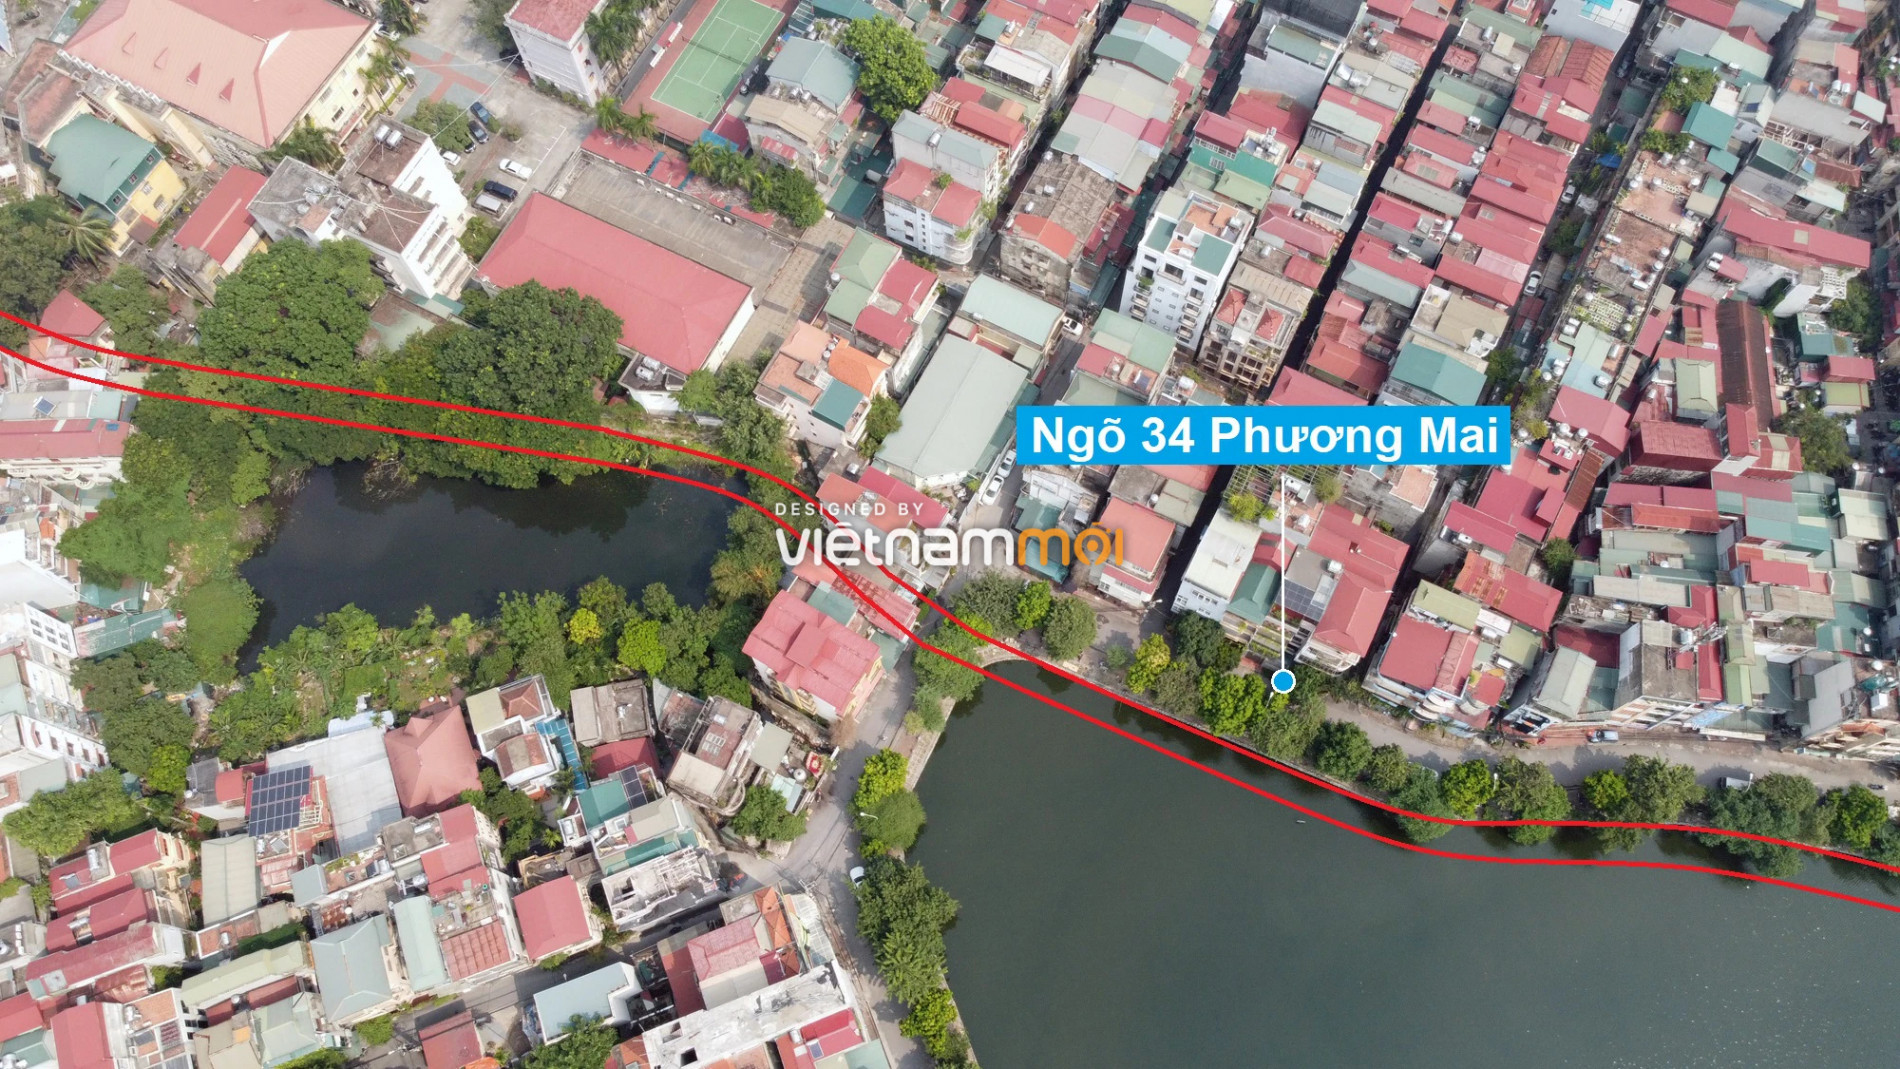 Những khu đất sắp thu hồi để mở đường ở quận Đống Đa, Hà Nội (phần 2) - Ảnh 11.